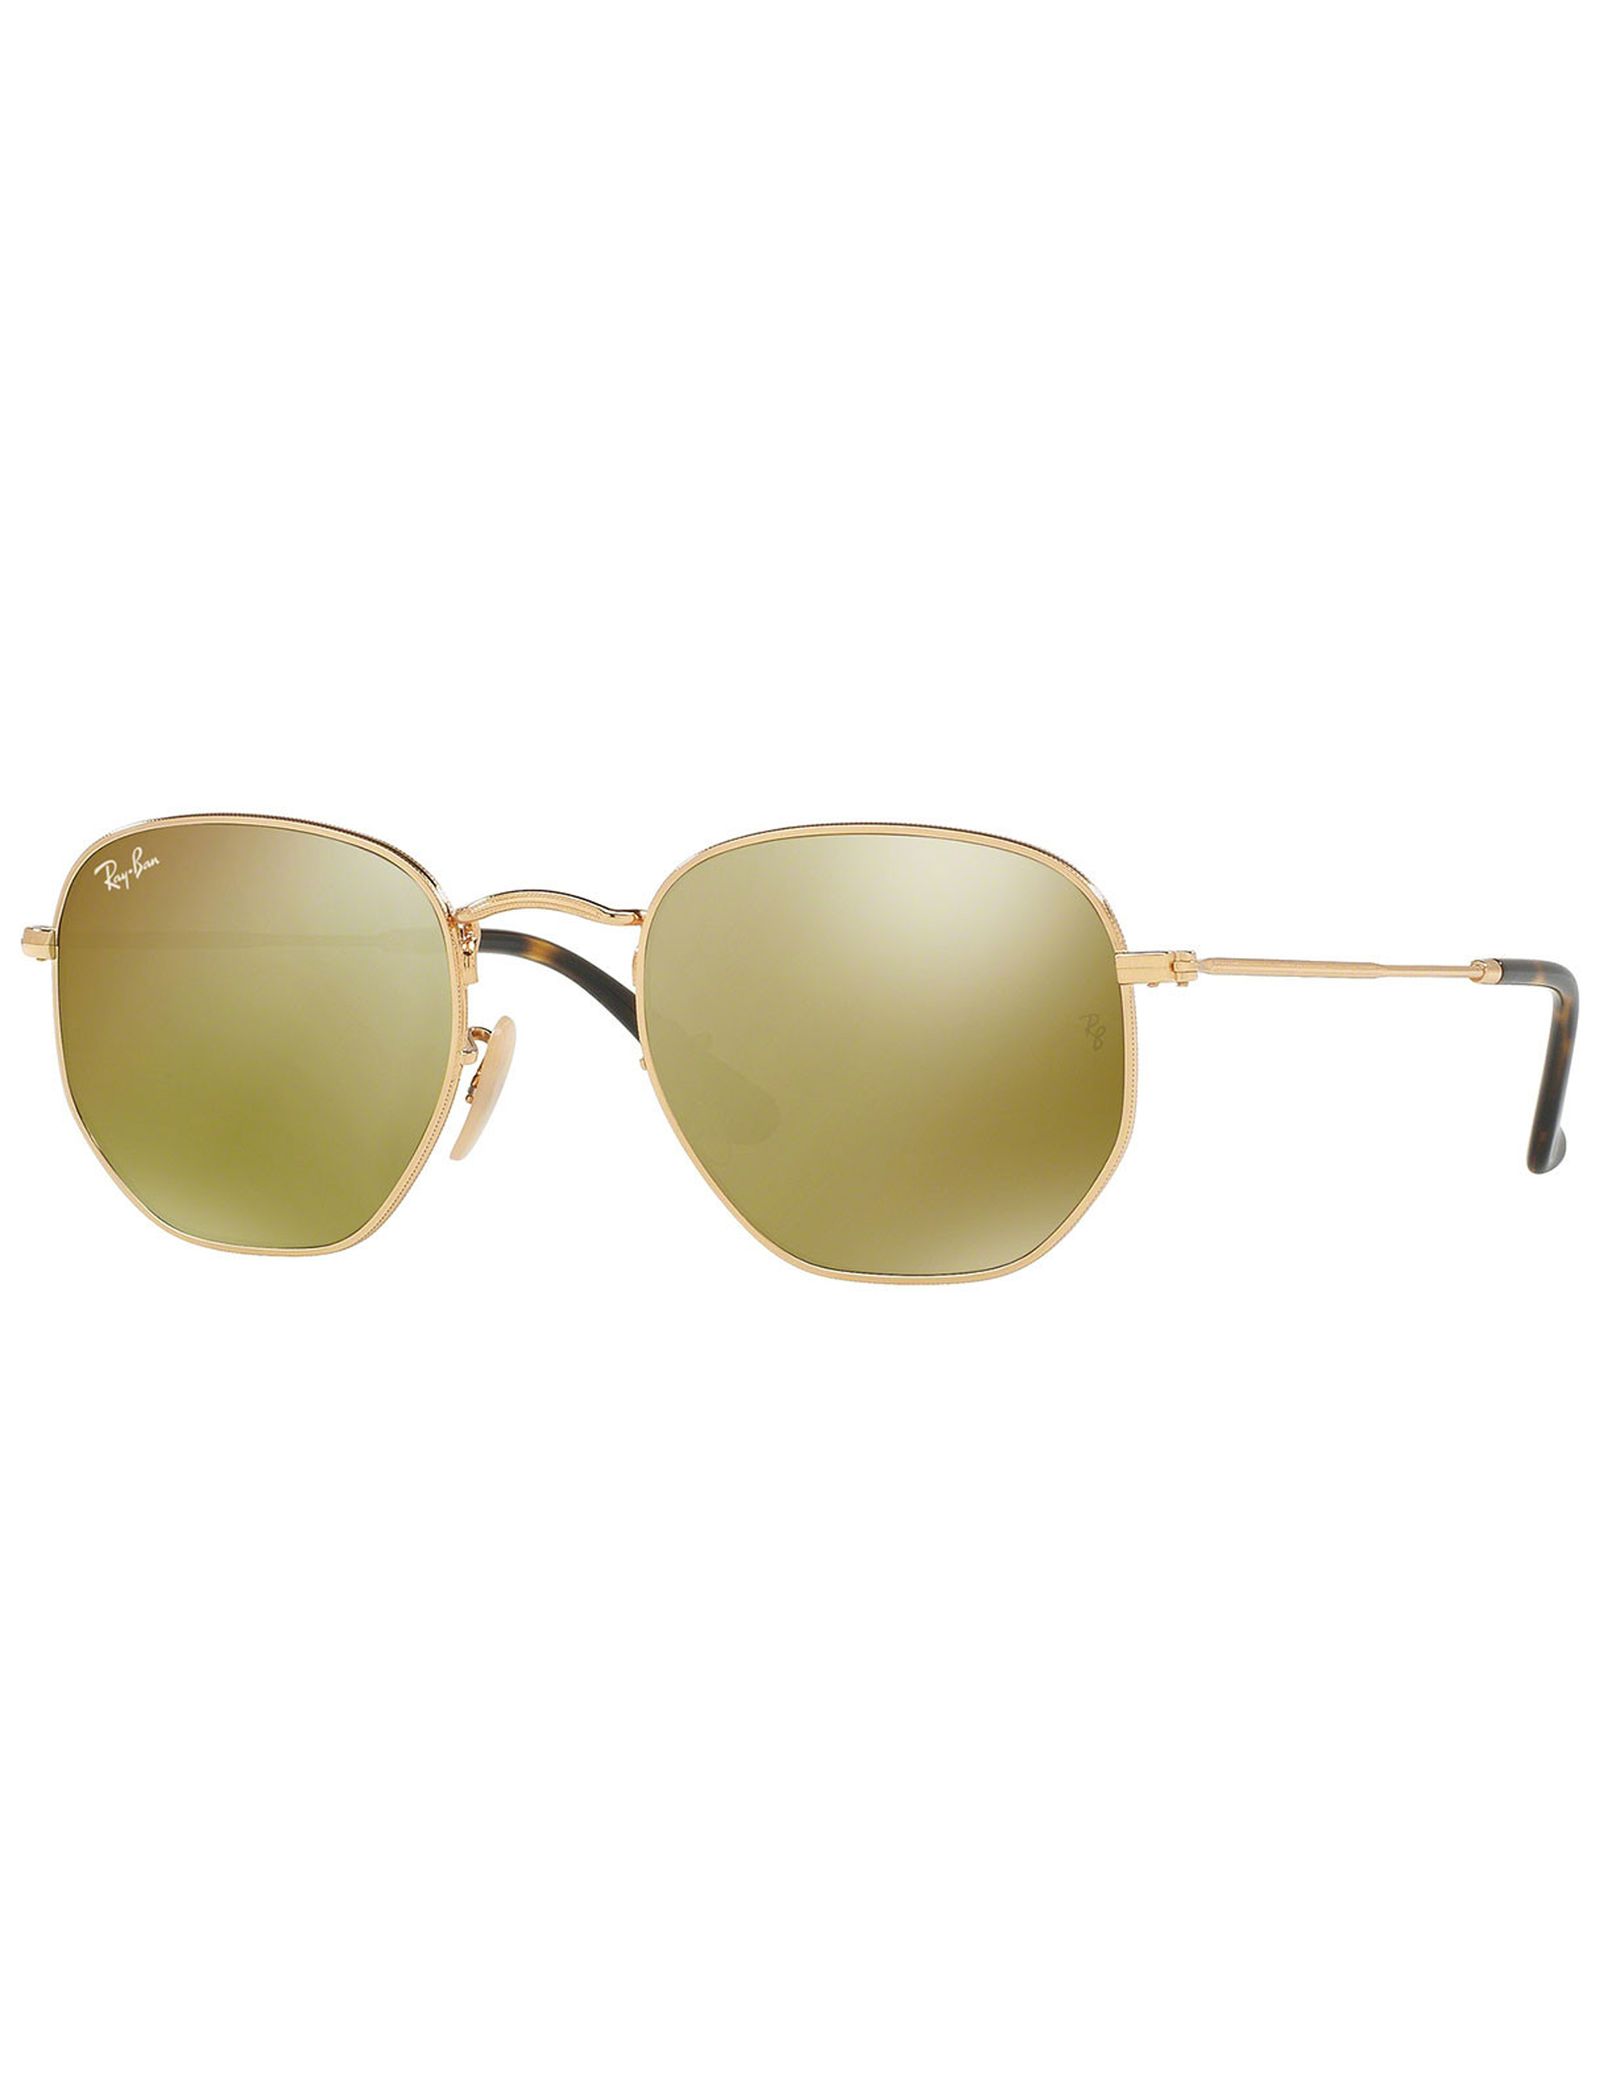 عینک آفتابی ری بن مدل 3548-001/93-51 - طلایی - 4